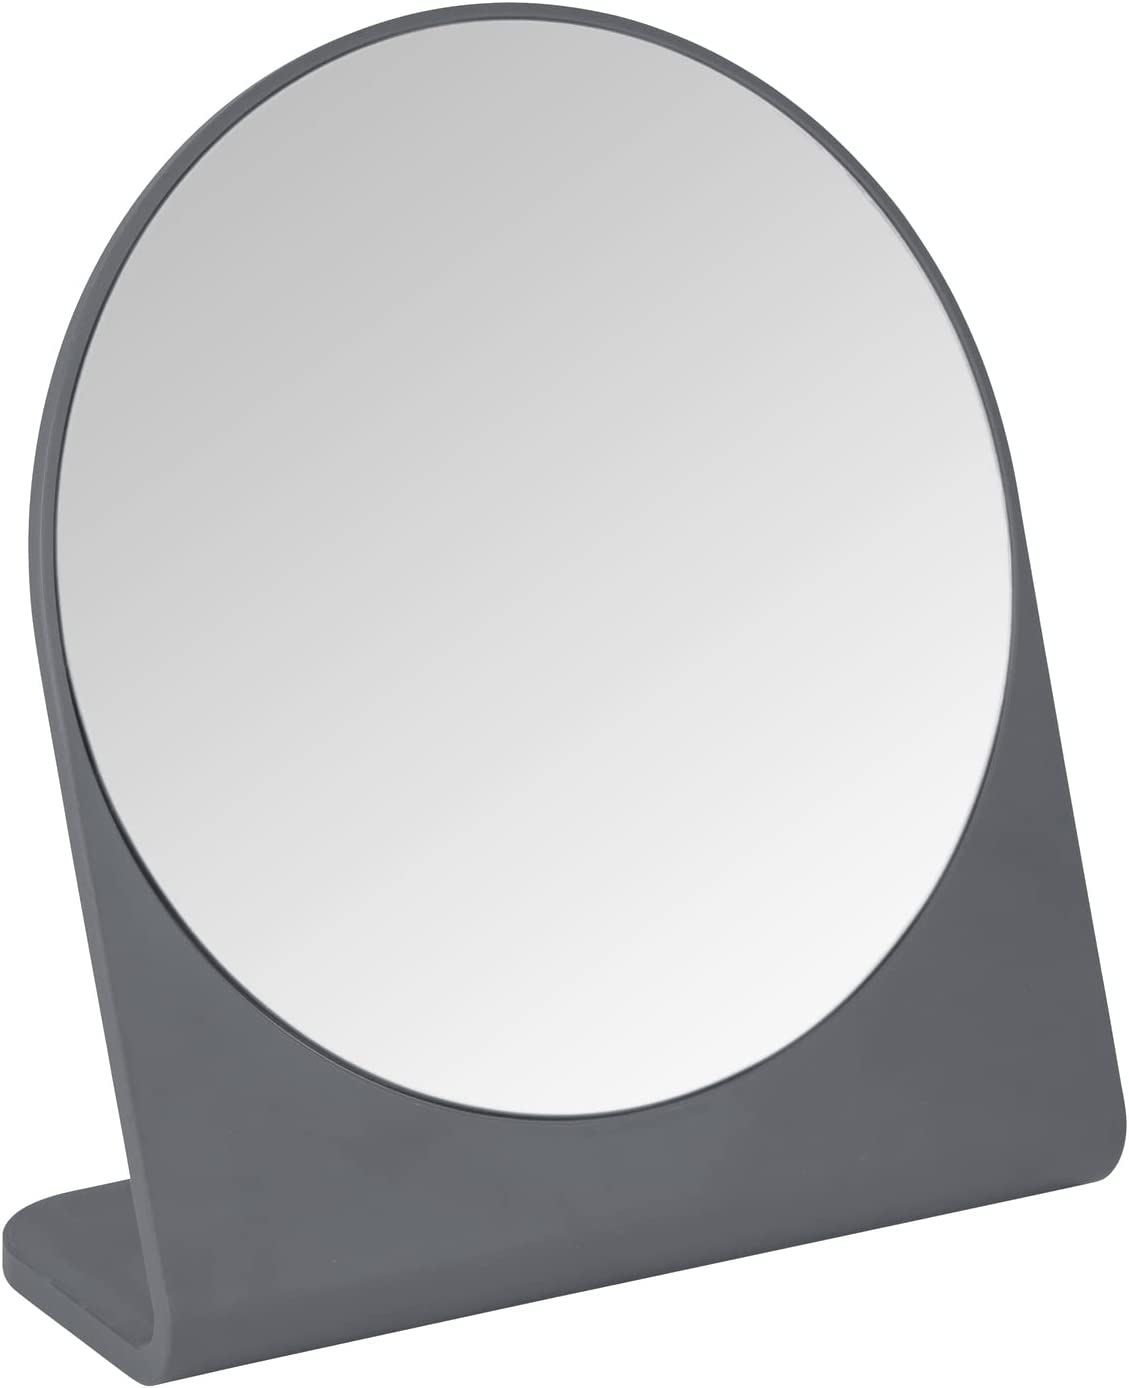 Kosmetikspiegel Marcon Anthrazit - Standspiegel, Polystyrol, 17.5 x 19 x 7 cm, Anthrazit